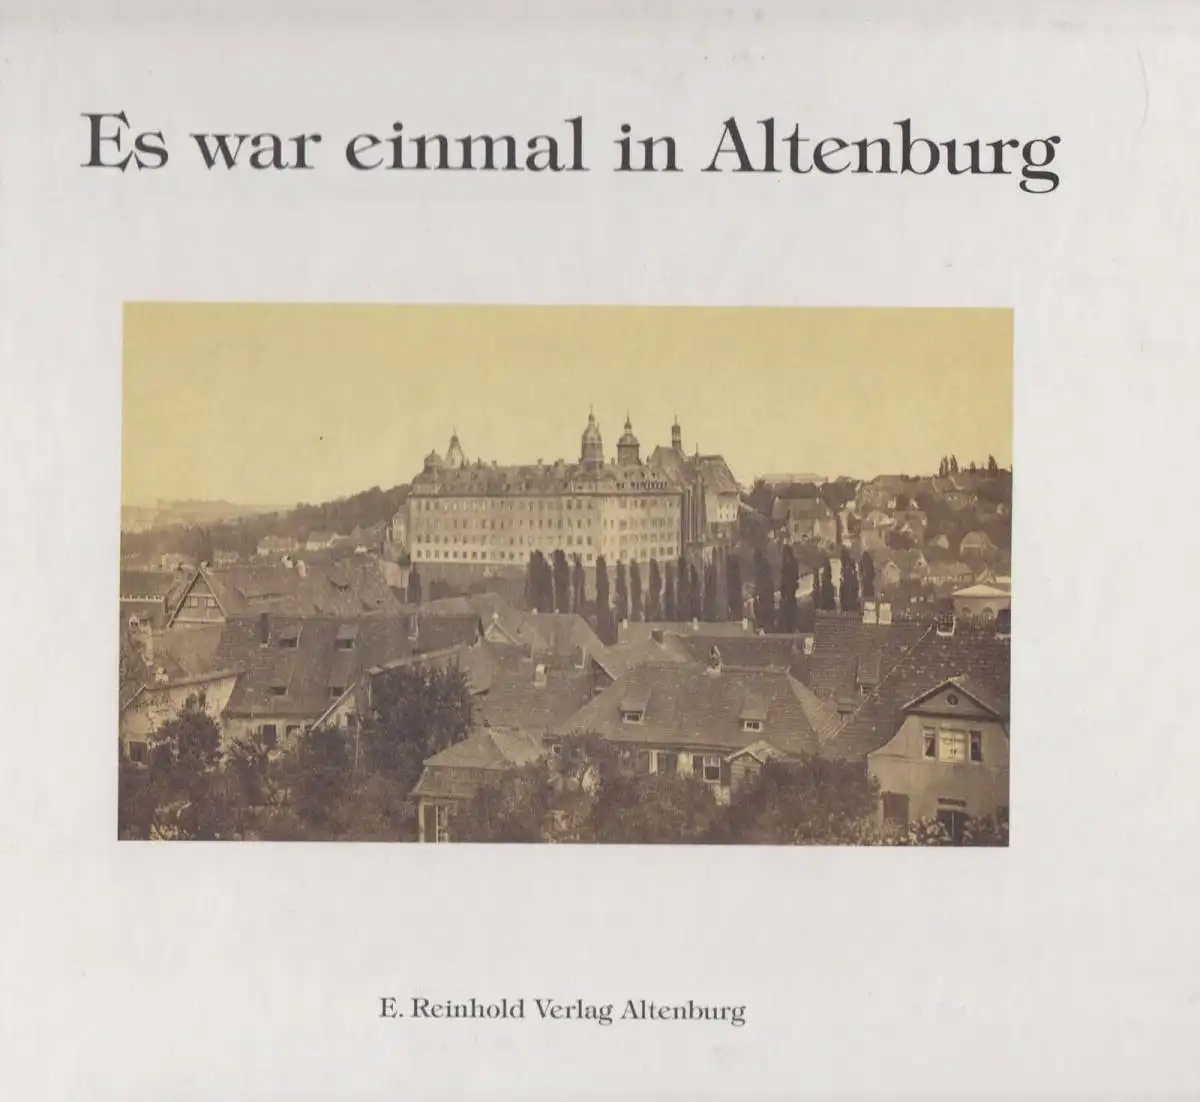 Buch: Es war einmal in Altenburg, Wolf, Gustav und Eckhart Reinhold. 1995